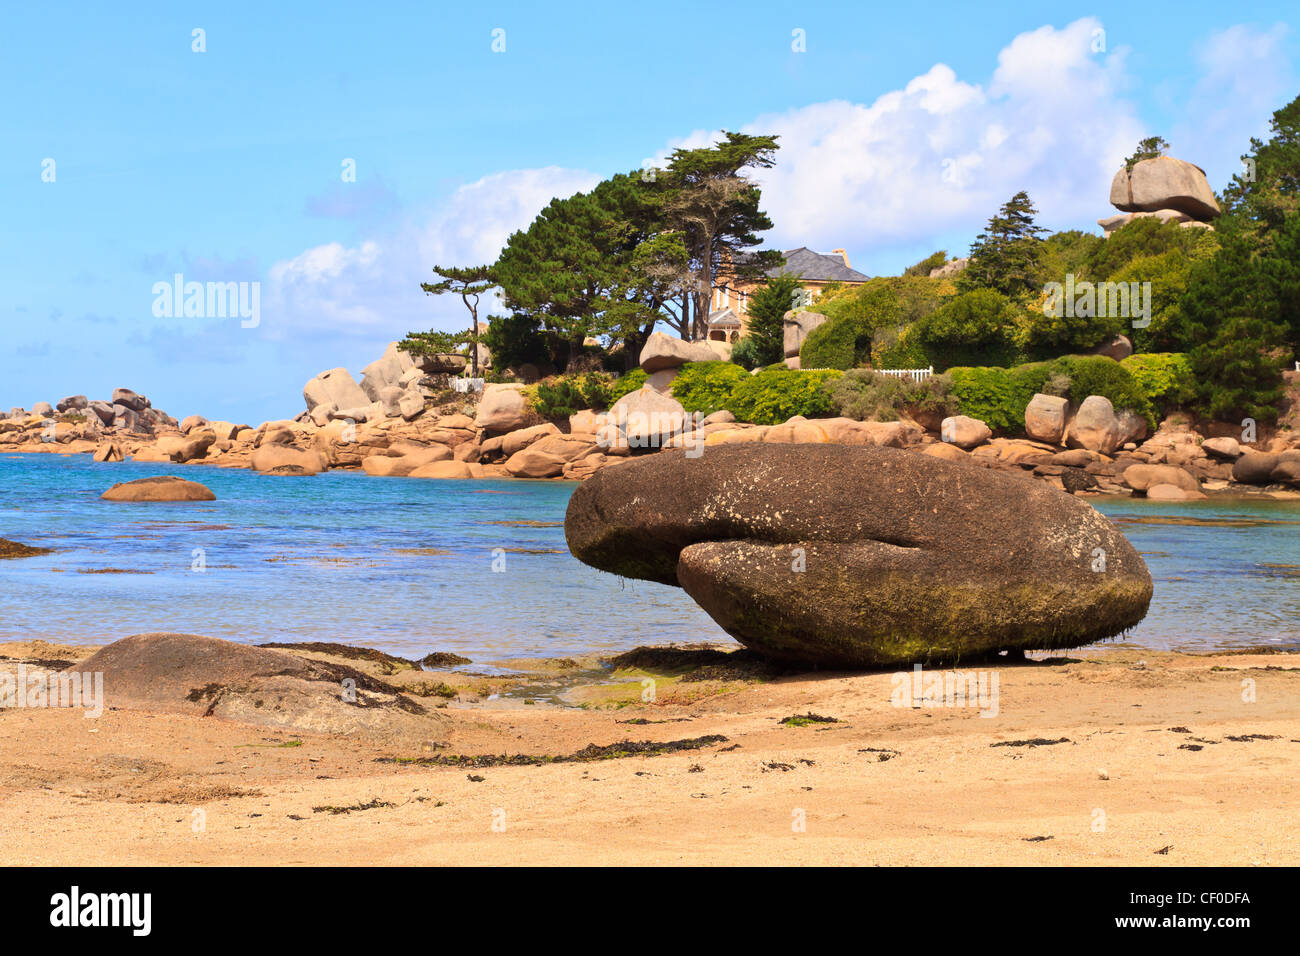 Cote de granite Rose, Brittany Coast near Ploumanach, France Stock Photo